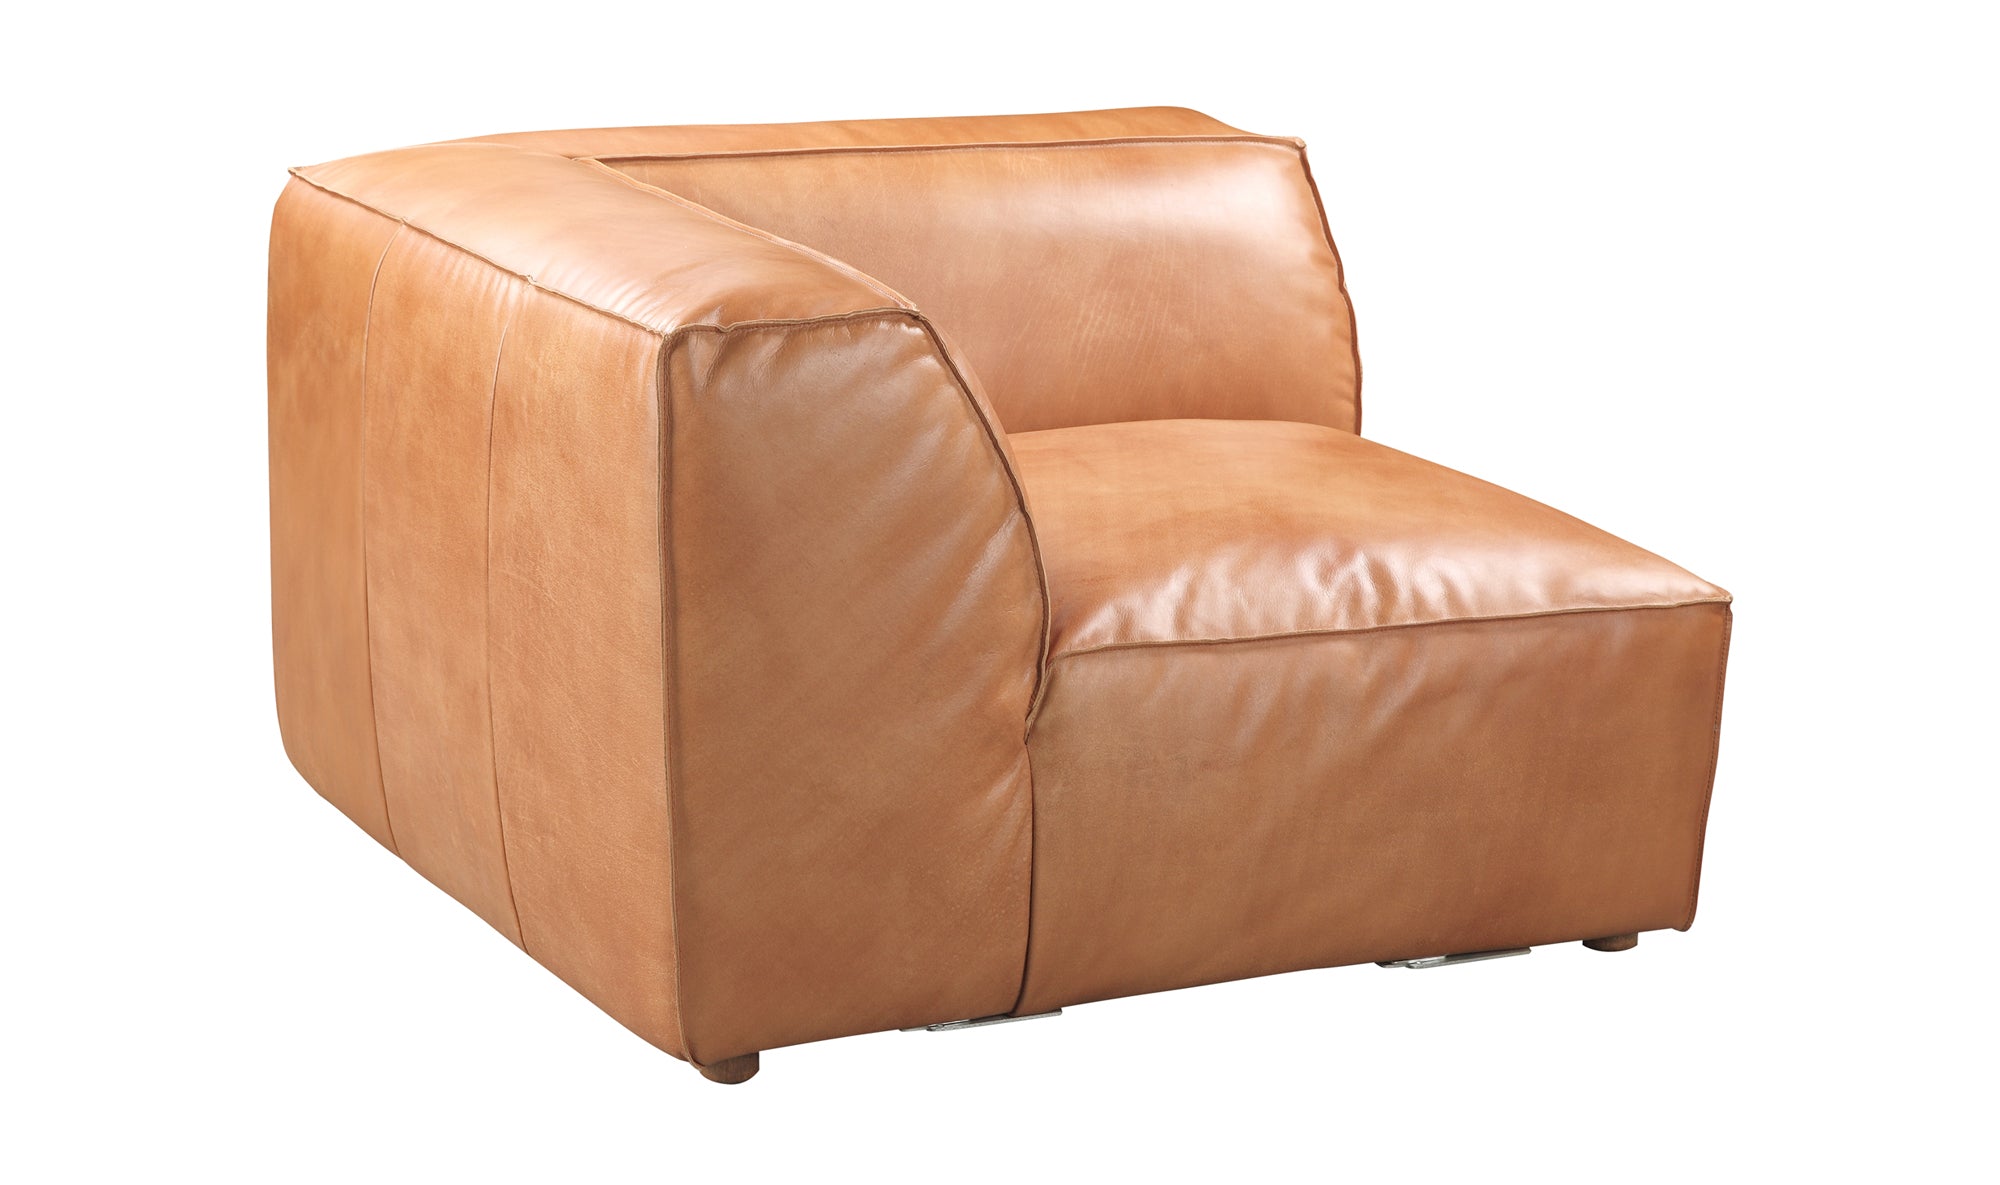 Luxe Corner Chair - Tan